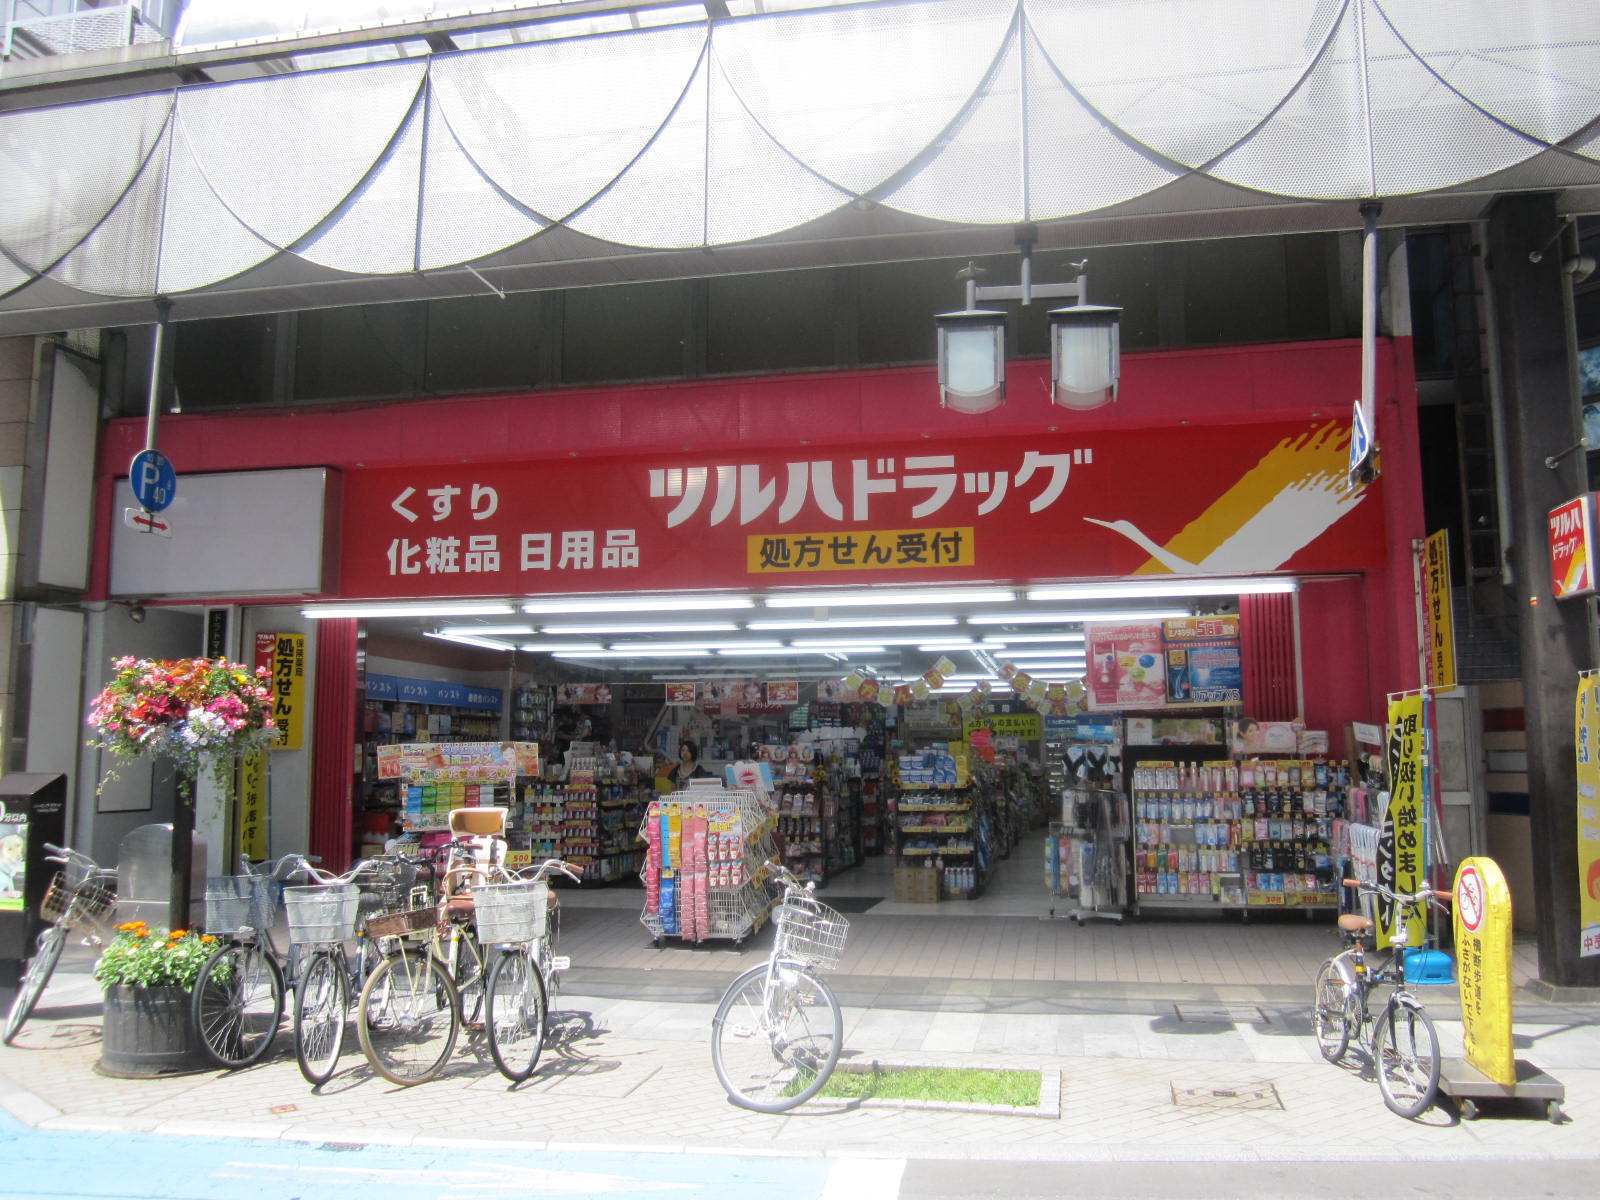 Dorakkusutoa. Pharmacy Tsuruha drag Odori 2-chome (drugstore) to 400m